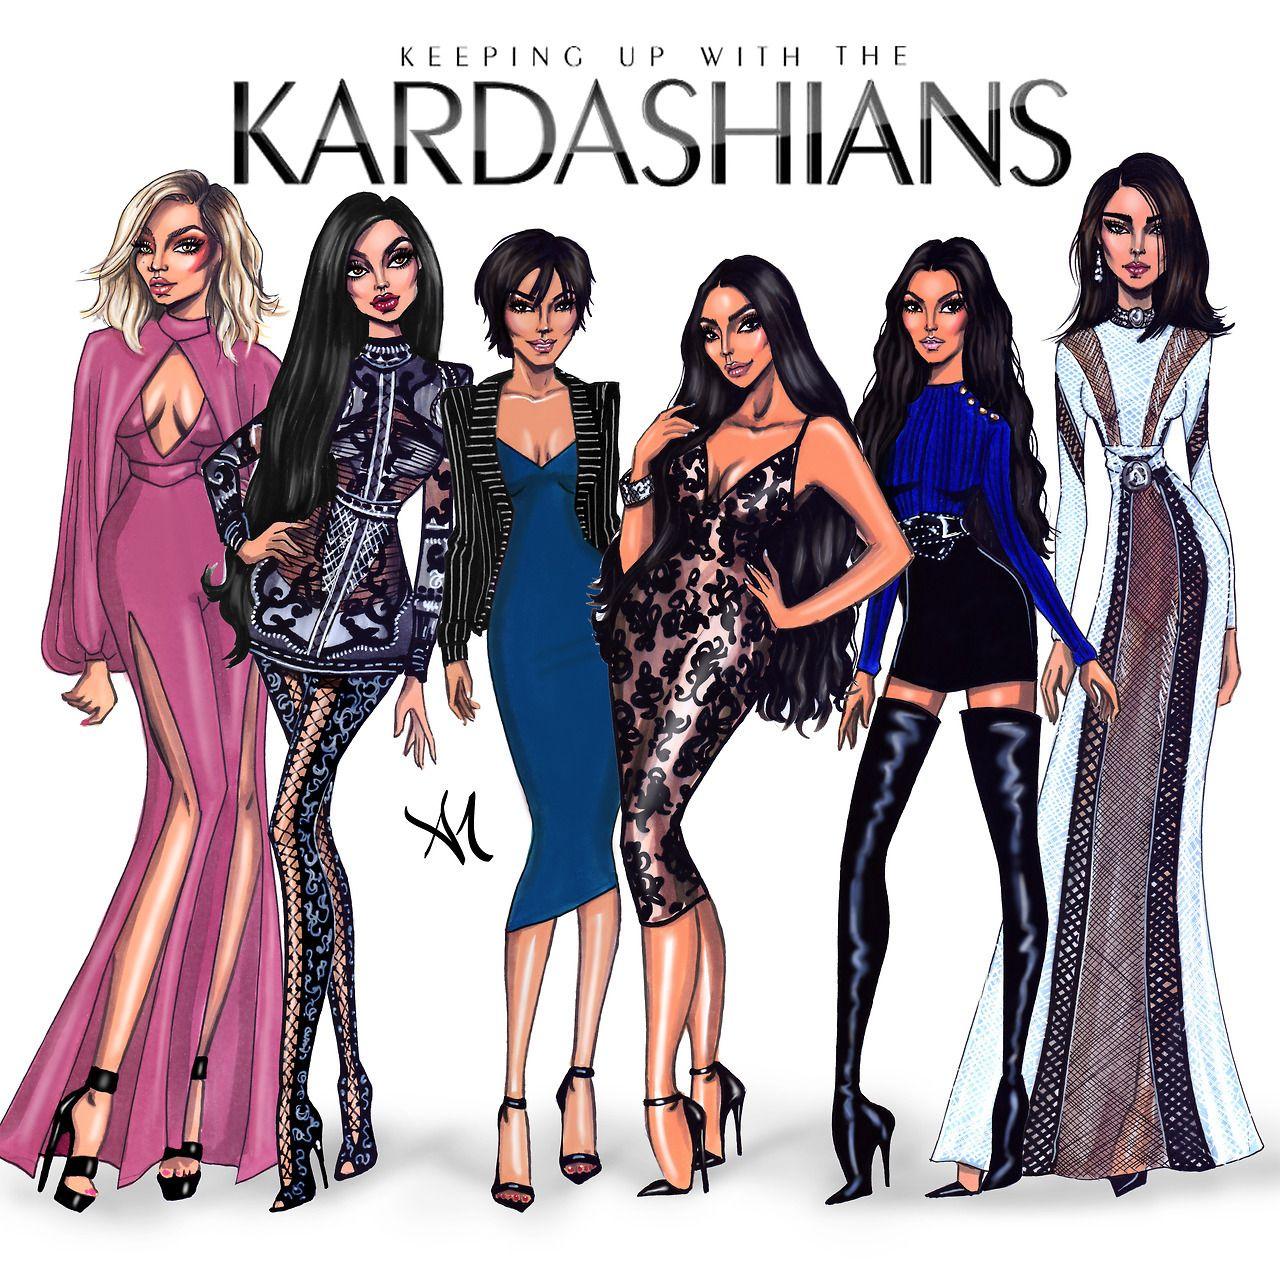 Kardashians Wallpapers